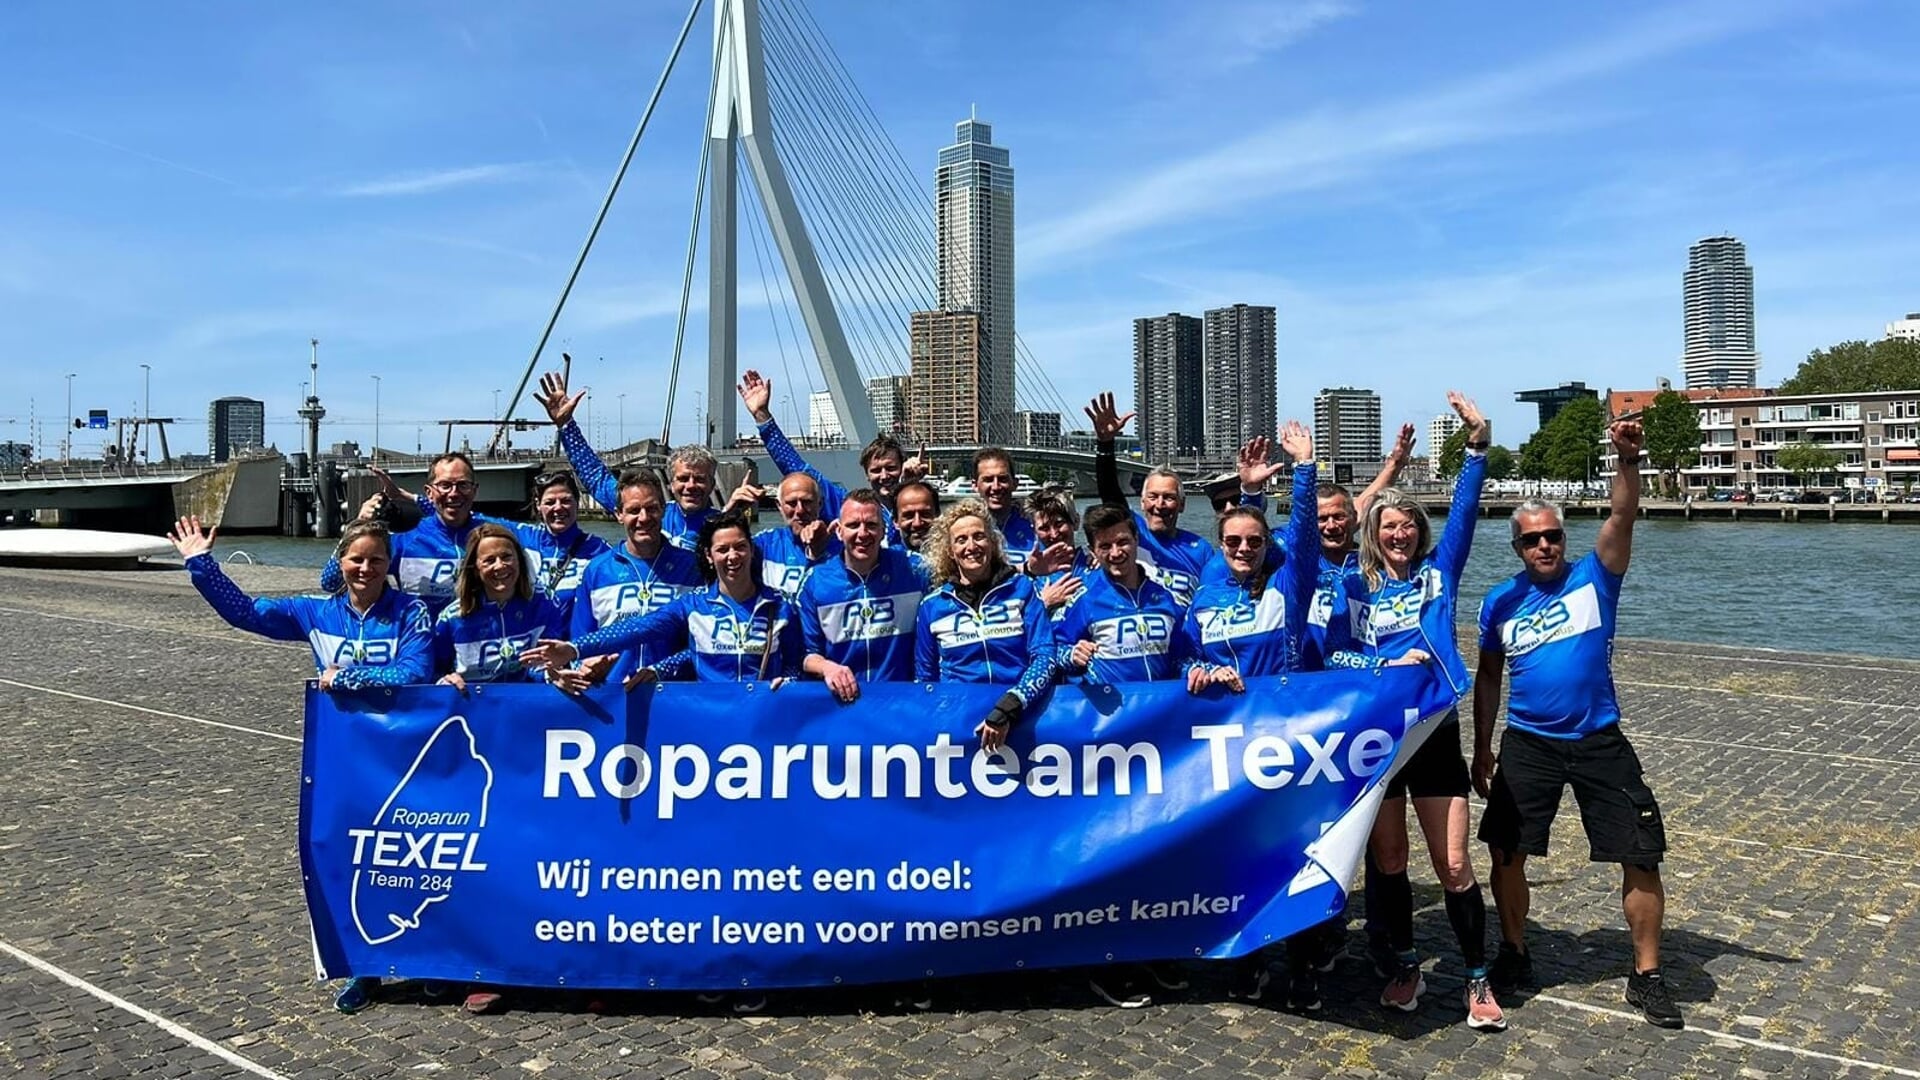 De Texelrunners van Roparunteam Texel in Rotterdam met 'De Zwaan' op de achtergrond.